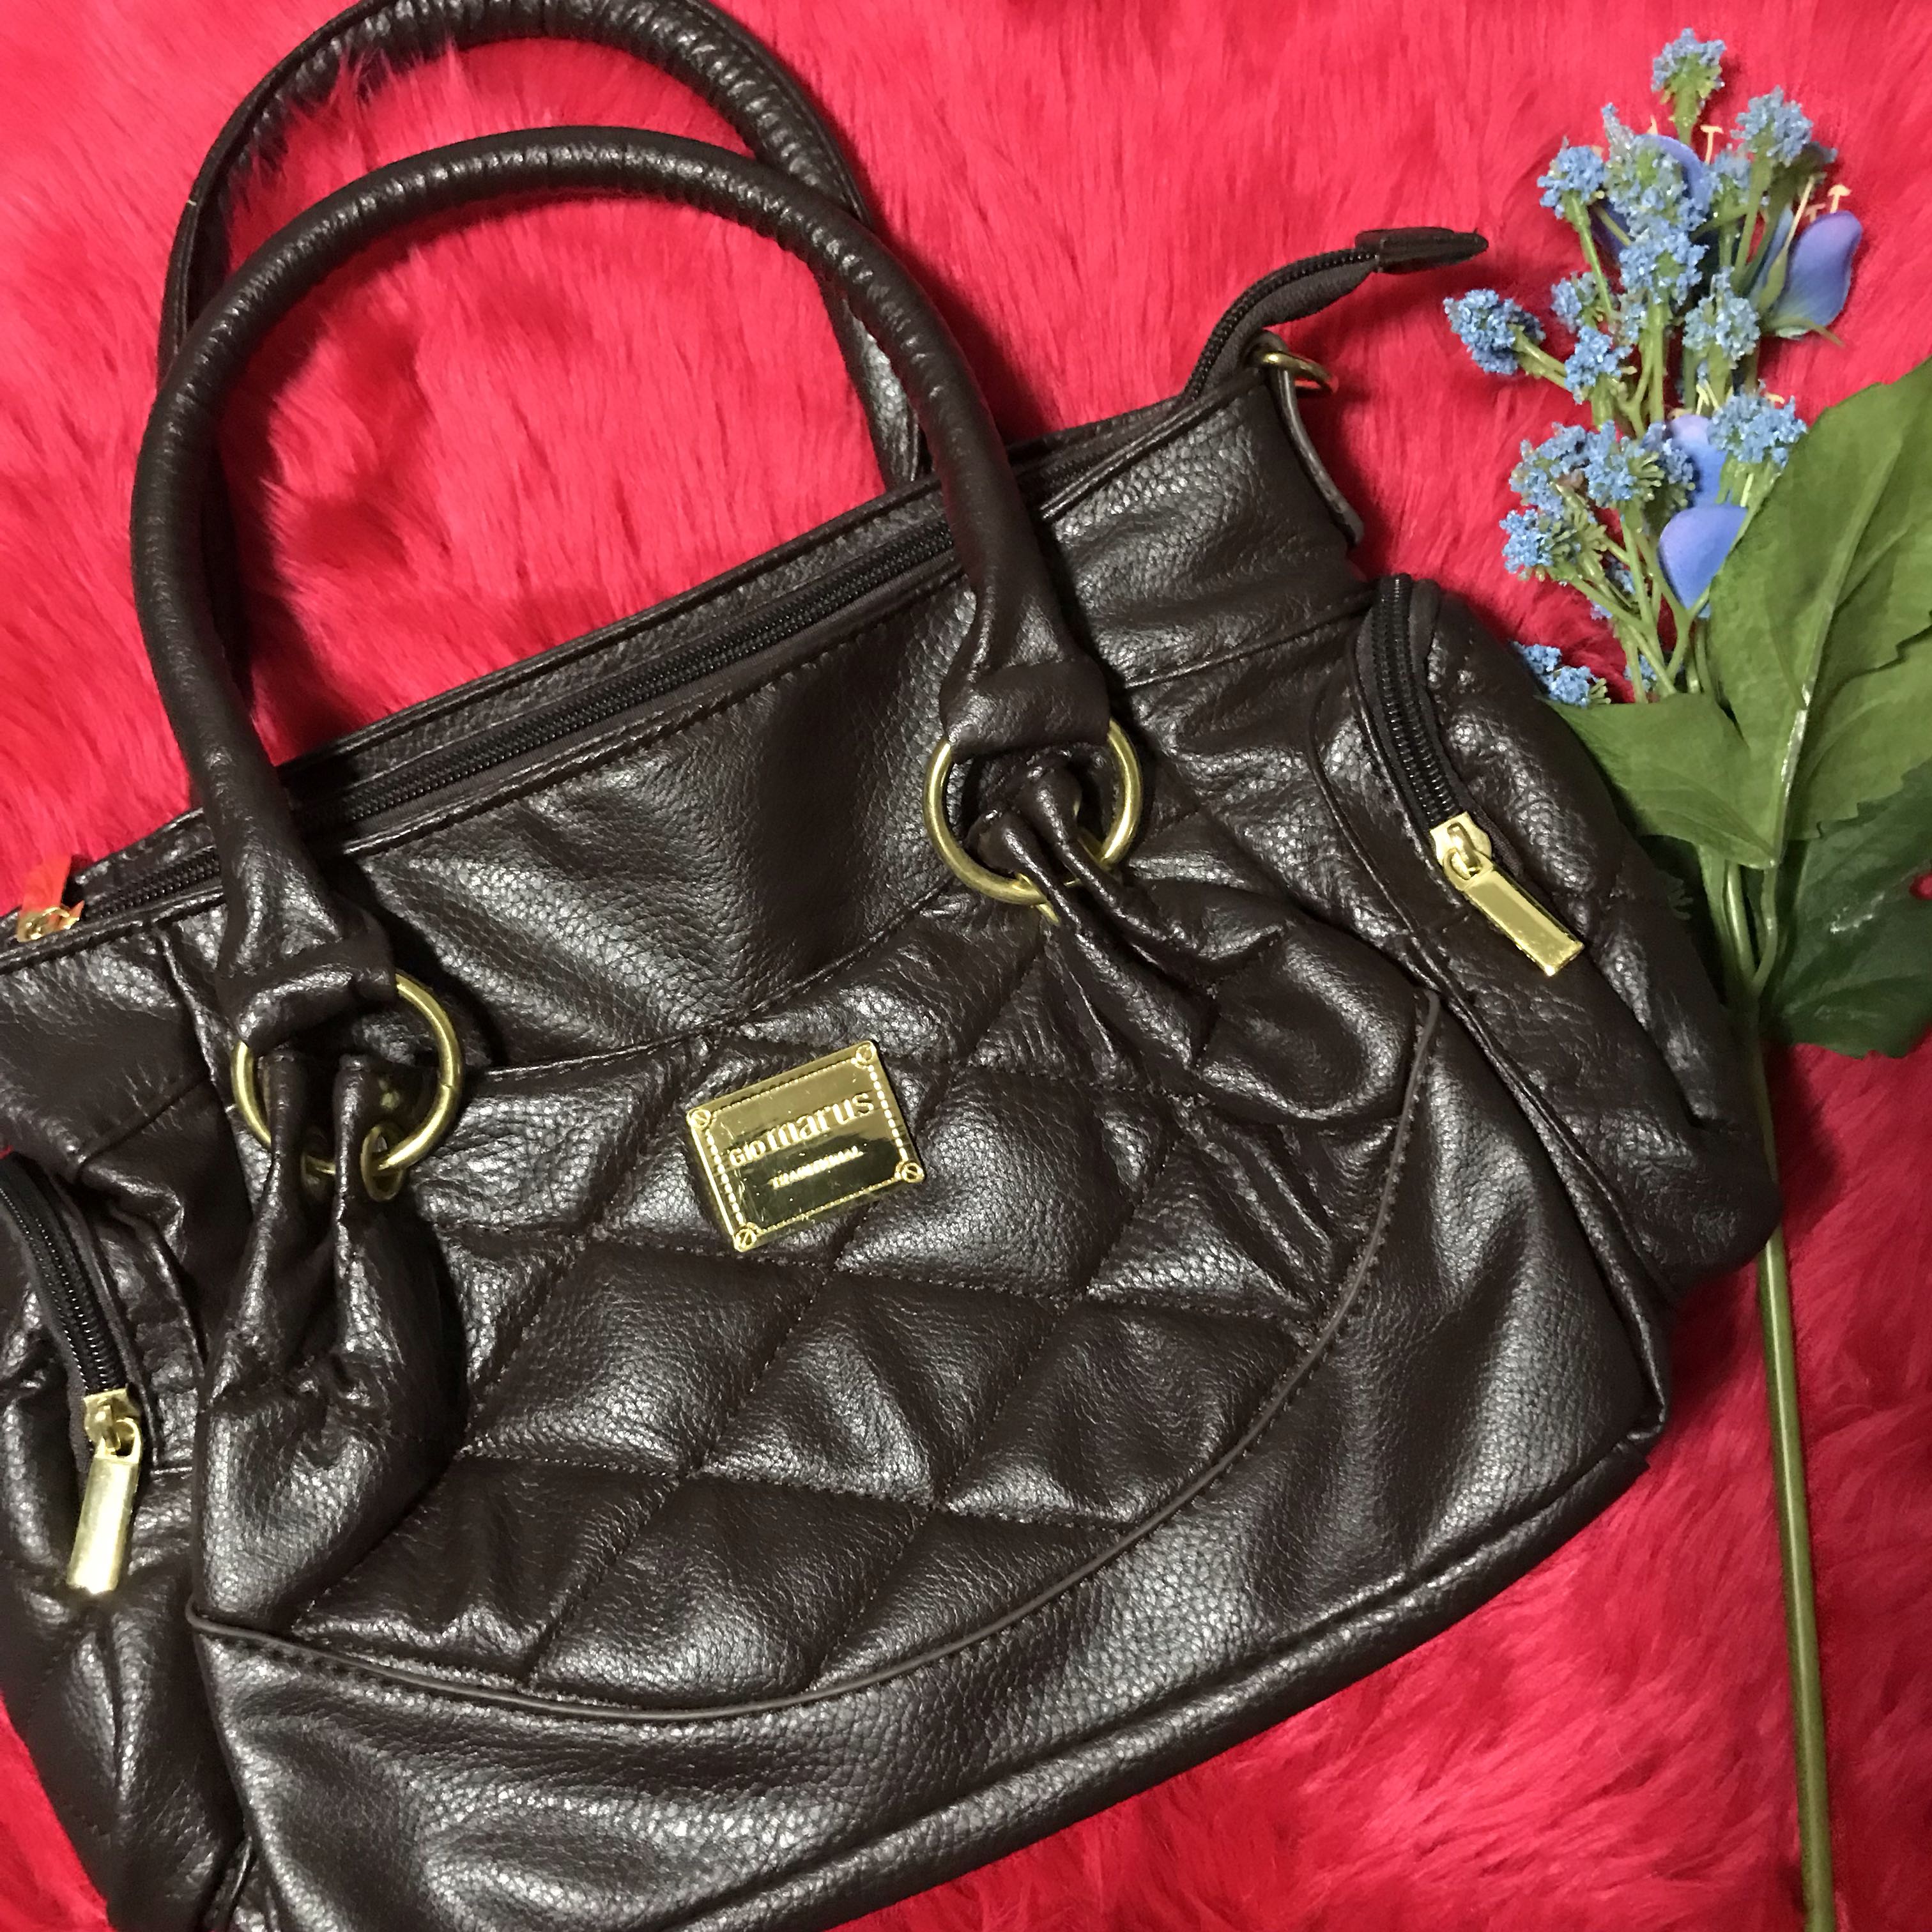 SALE! Original Gio Marus Dark Brown Handbag